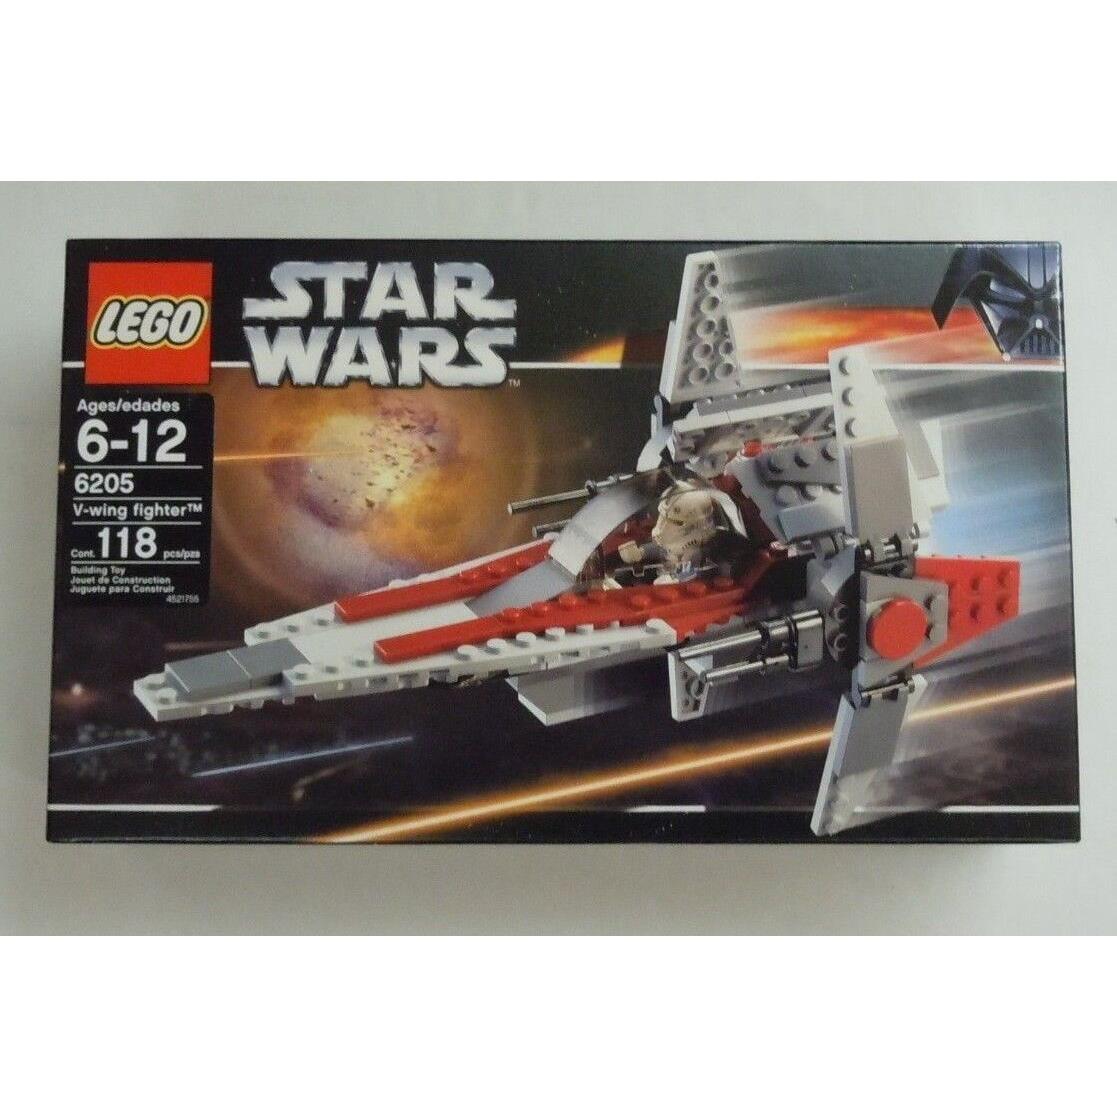 Lego Star Wars V-wing Fighter Set 6205 Pilot Minifig